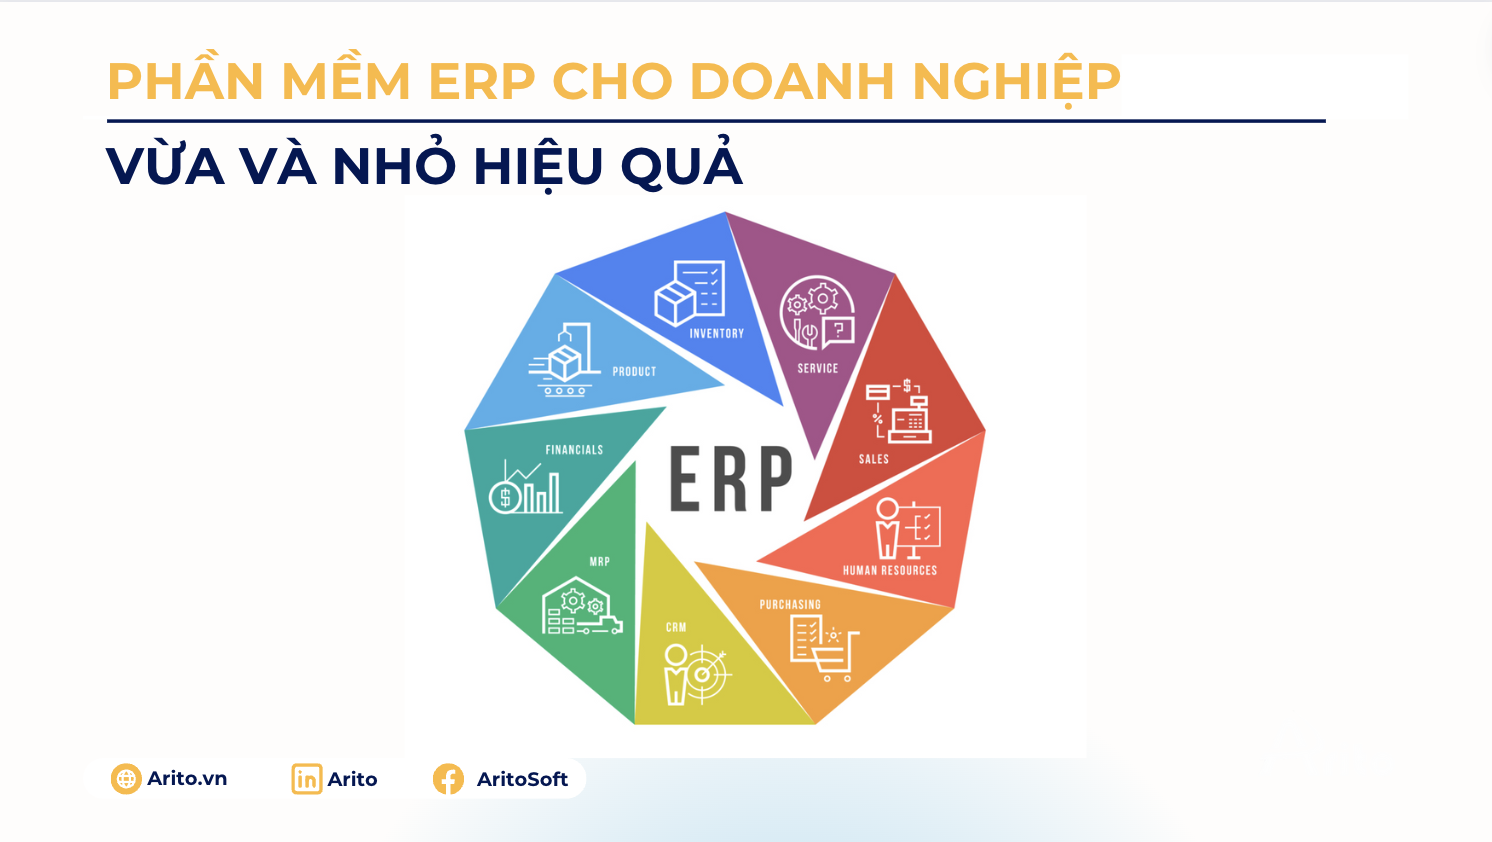 Phần mềm ERP cho doanh nghiệp vừa và nhỏ hiệu quả